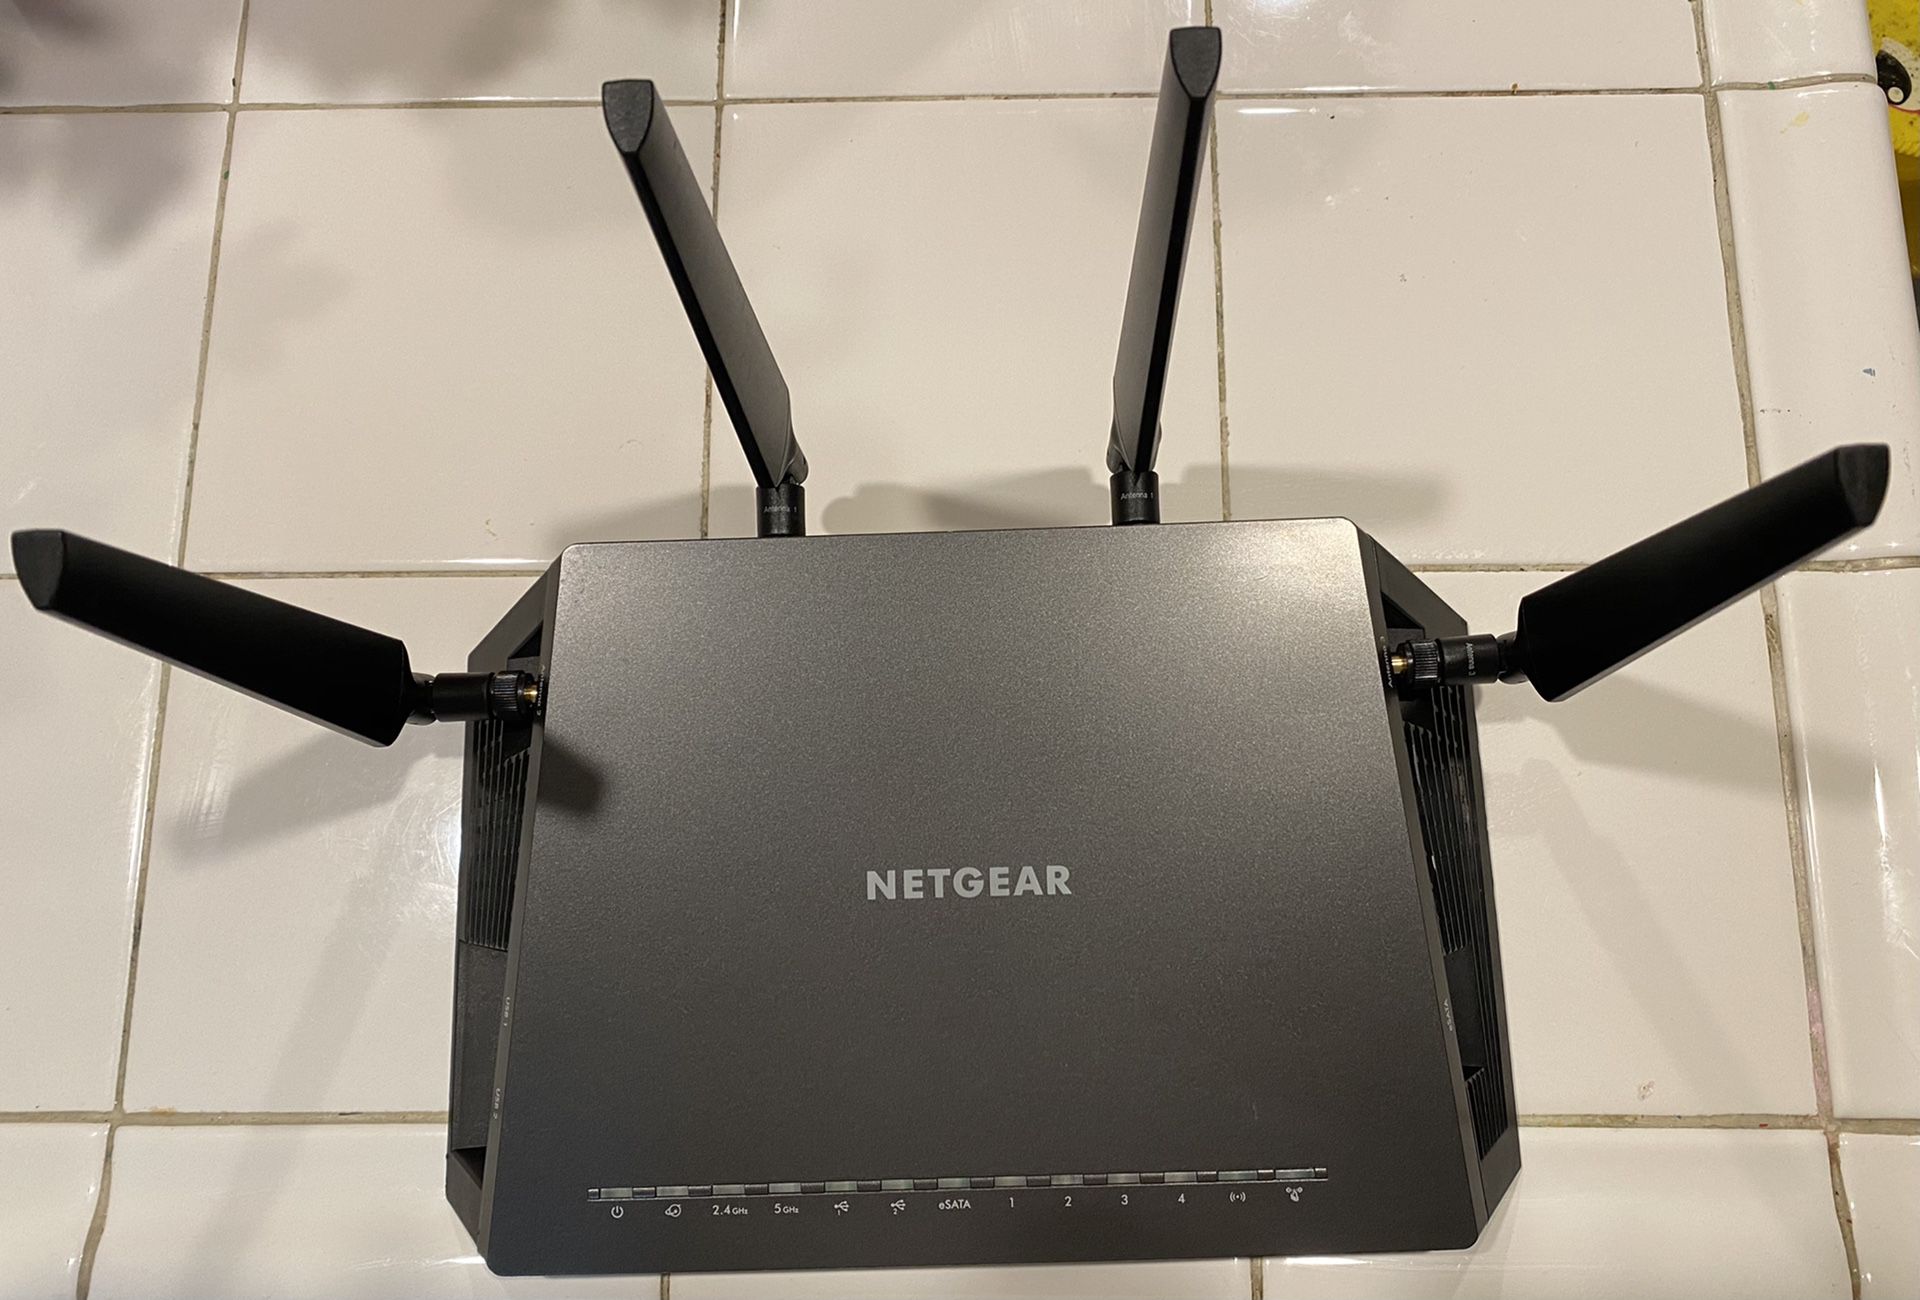 NETGEAR Nighthawk X4S Smart WiFi Router